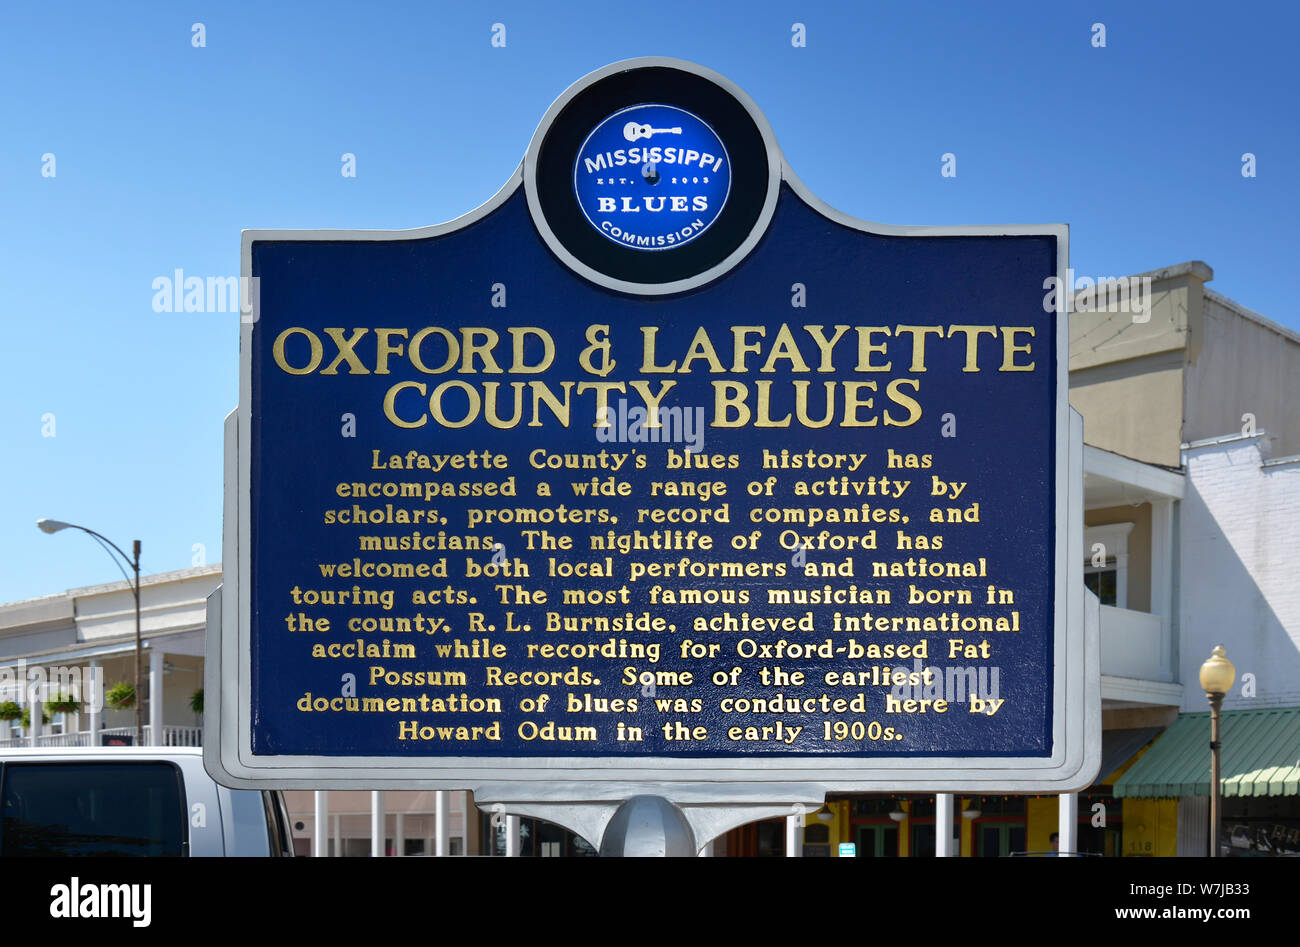 L'Oxford & Lafayette comté Blues, sur la place du palais de justice à Oxford, MS Banque D'Images